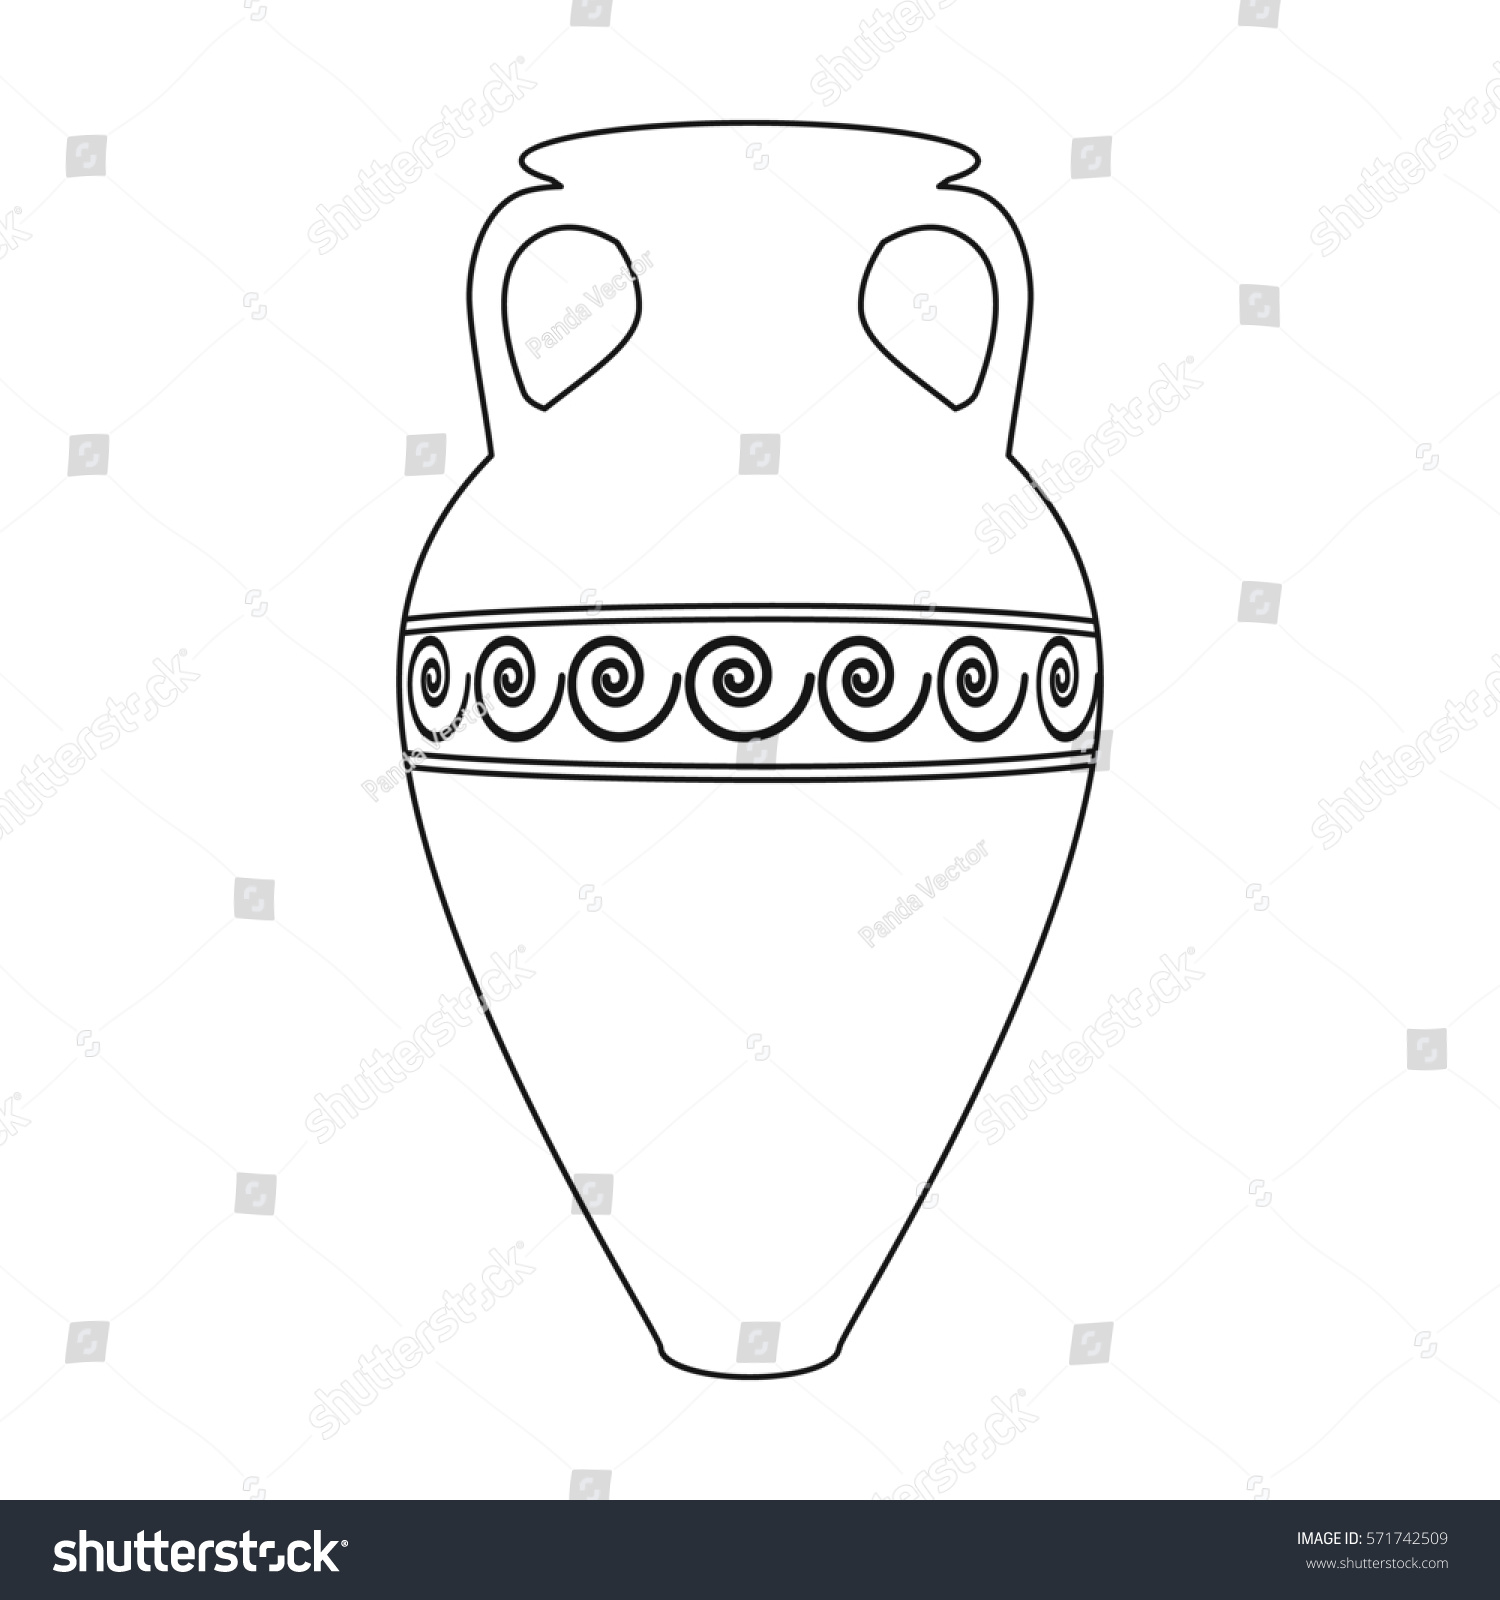 Египетская ваза для рисования